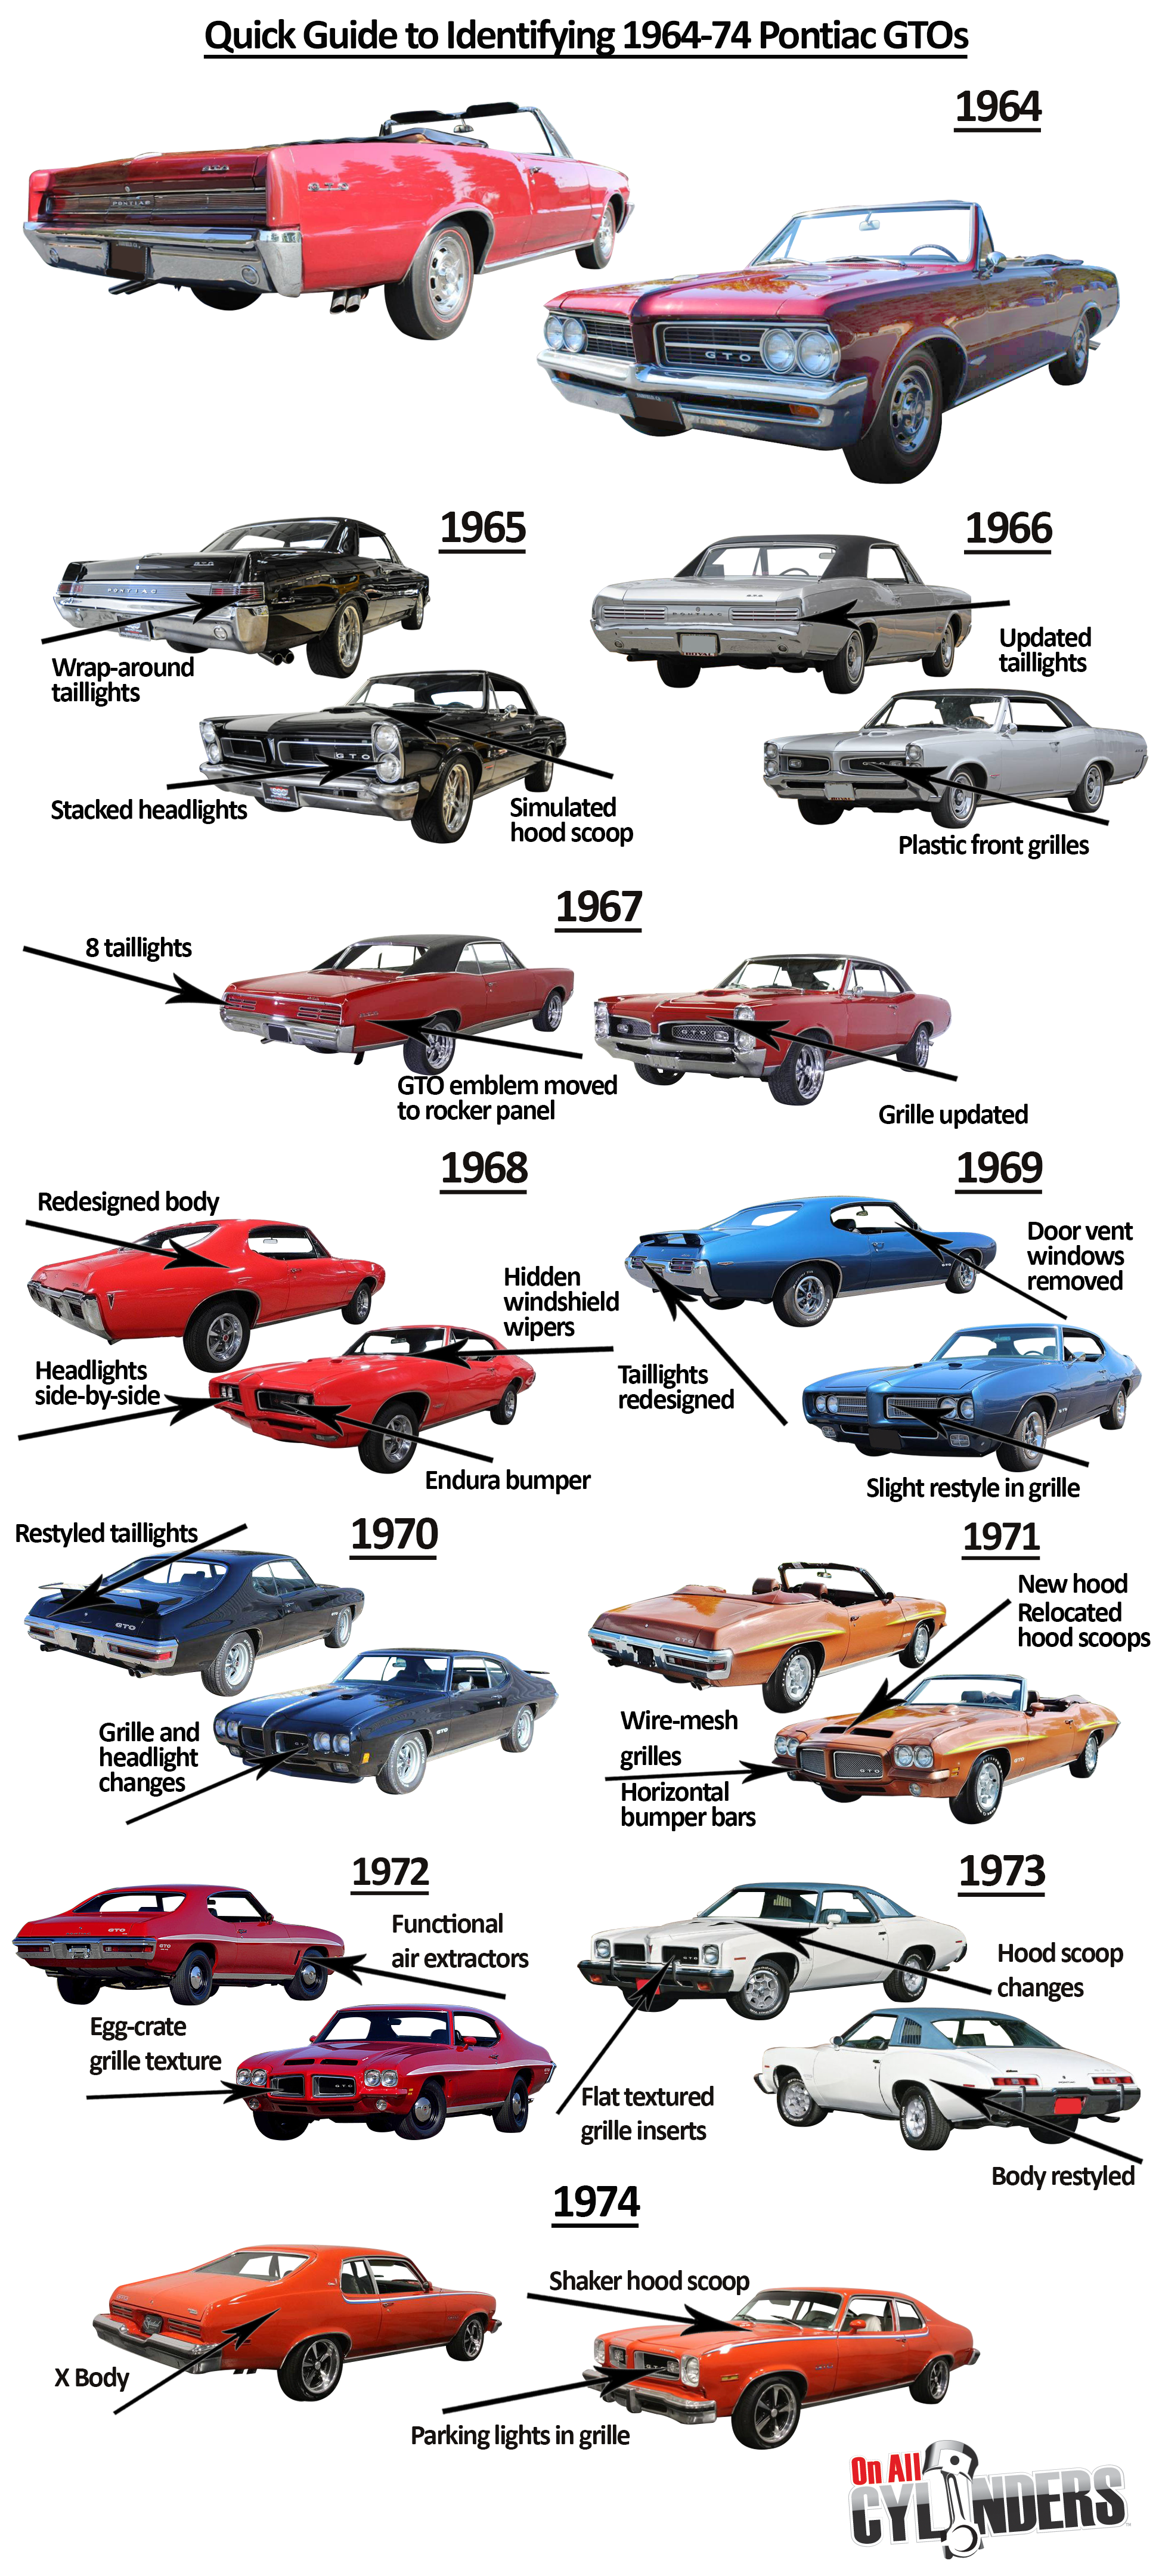 Pontiac GTO 64-74 Restoration Book How to Restore Your Pontiac GTO 1964-74